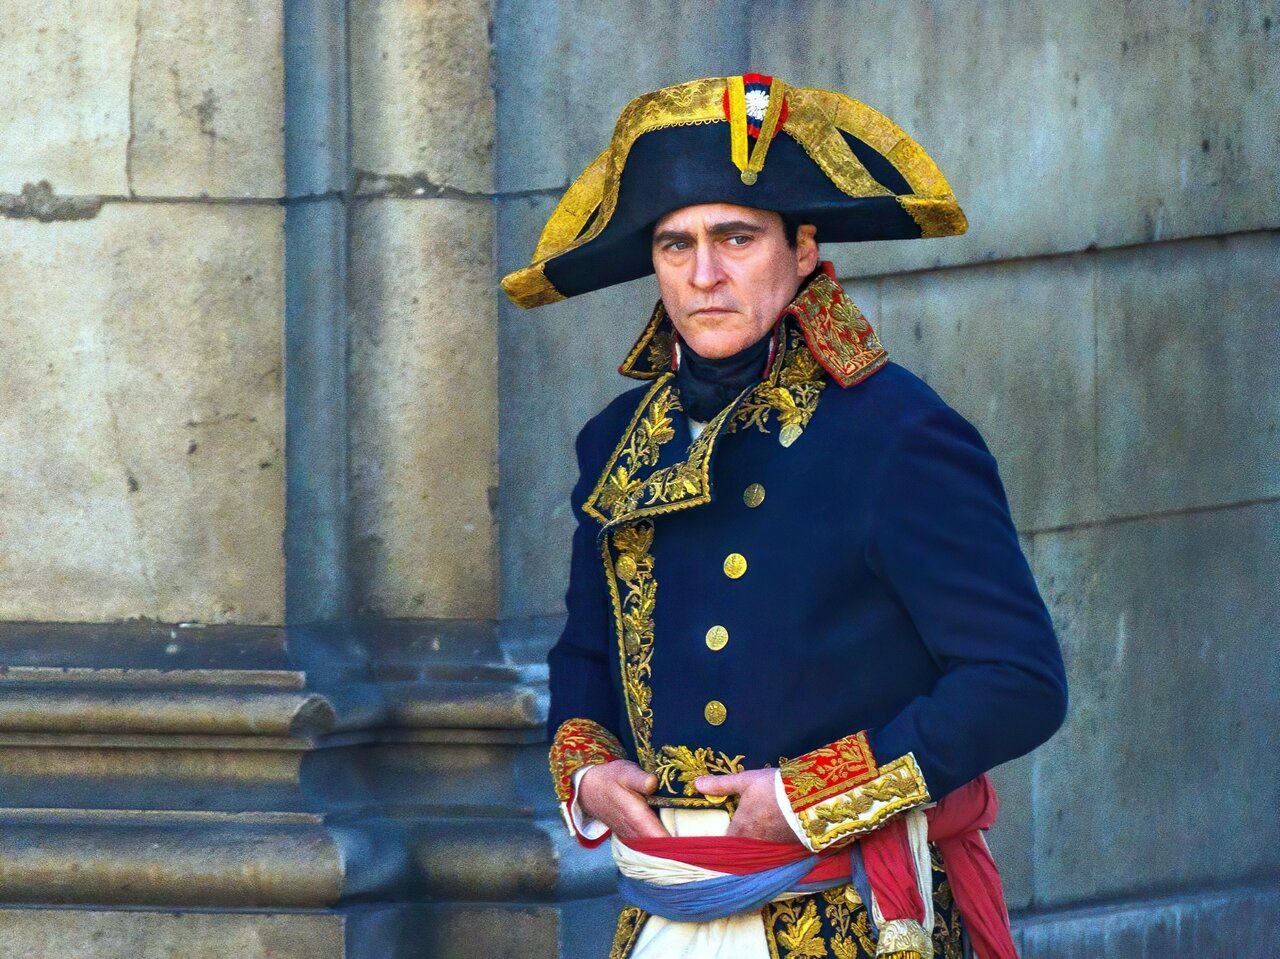 تصاویر دیده نشده ناپلئون در شلوغی خیابان های پاریس | راز رابطه اعتیادآور این پادشاه به همسرش ژوزفین چه بود؟ + فیلم